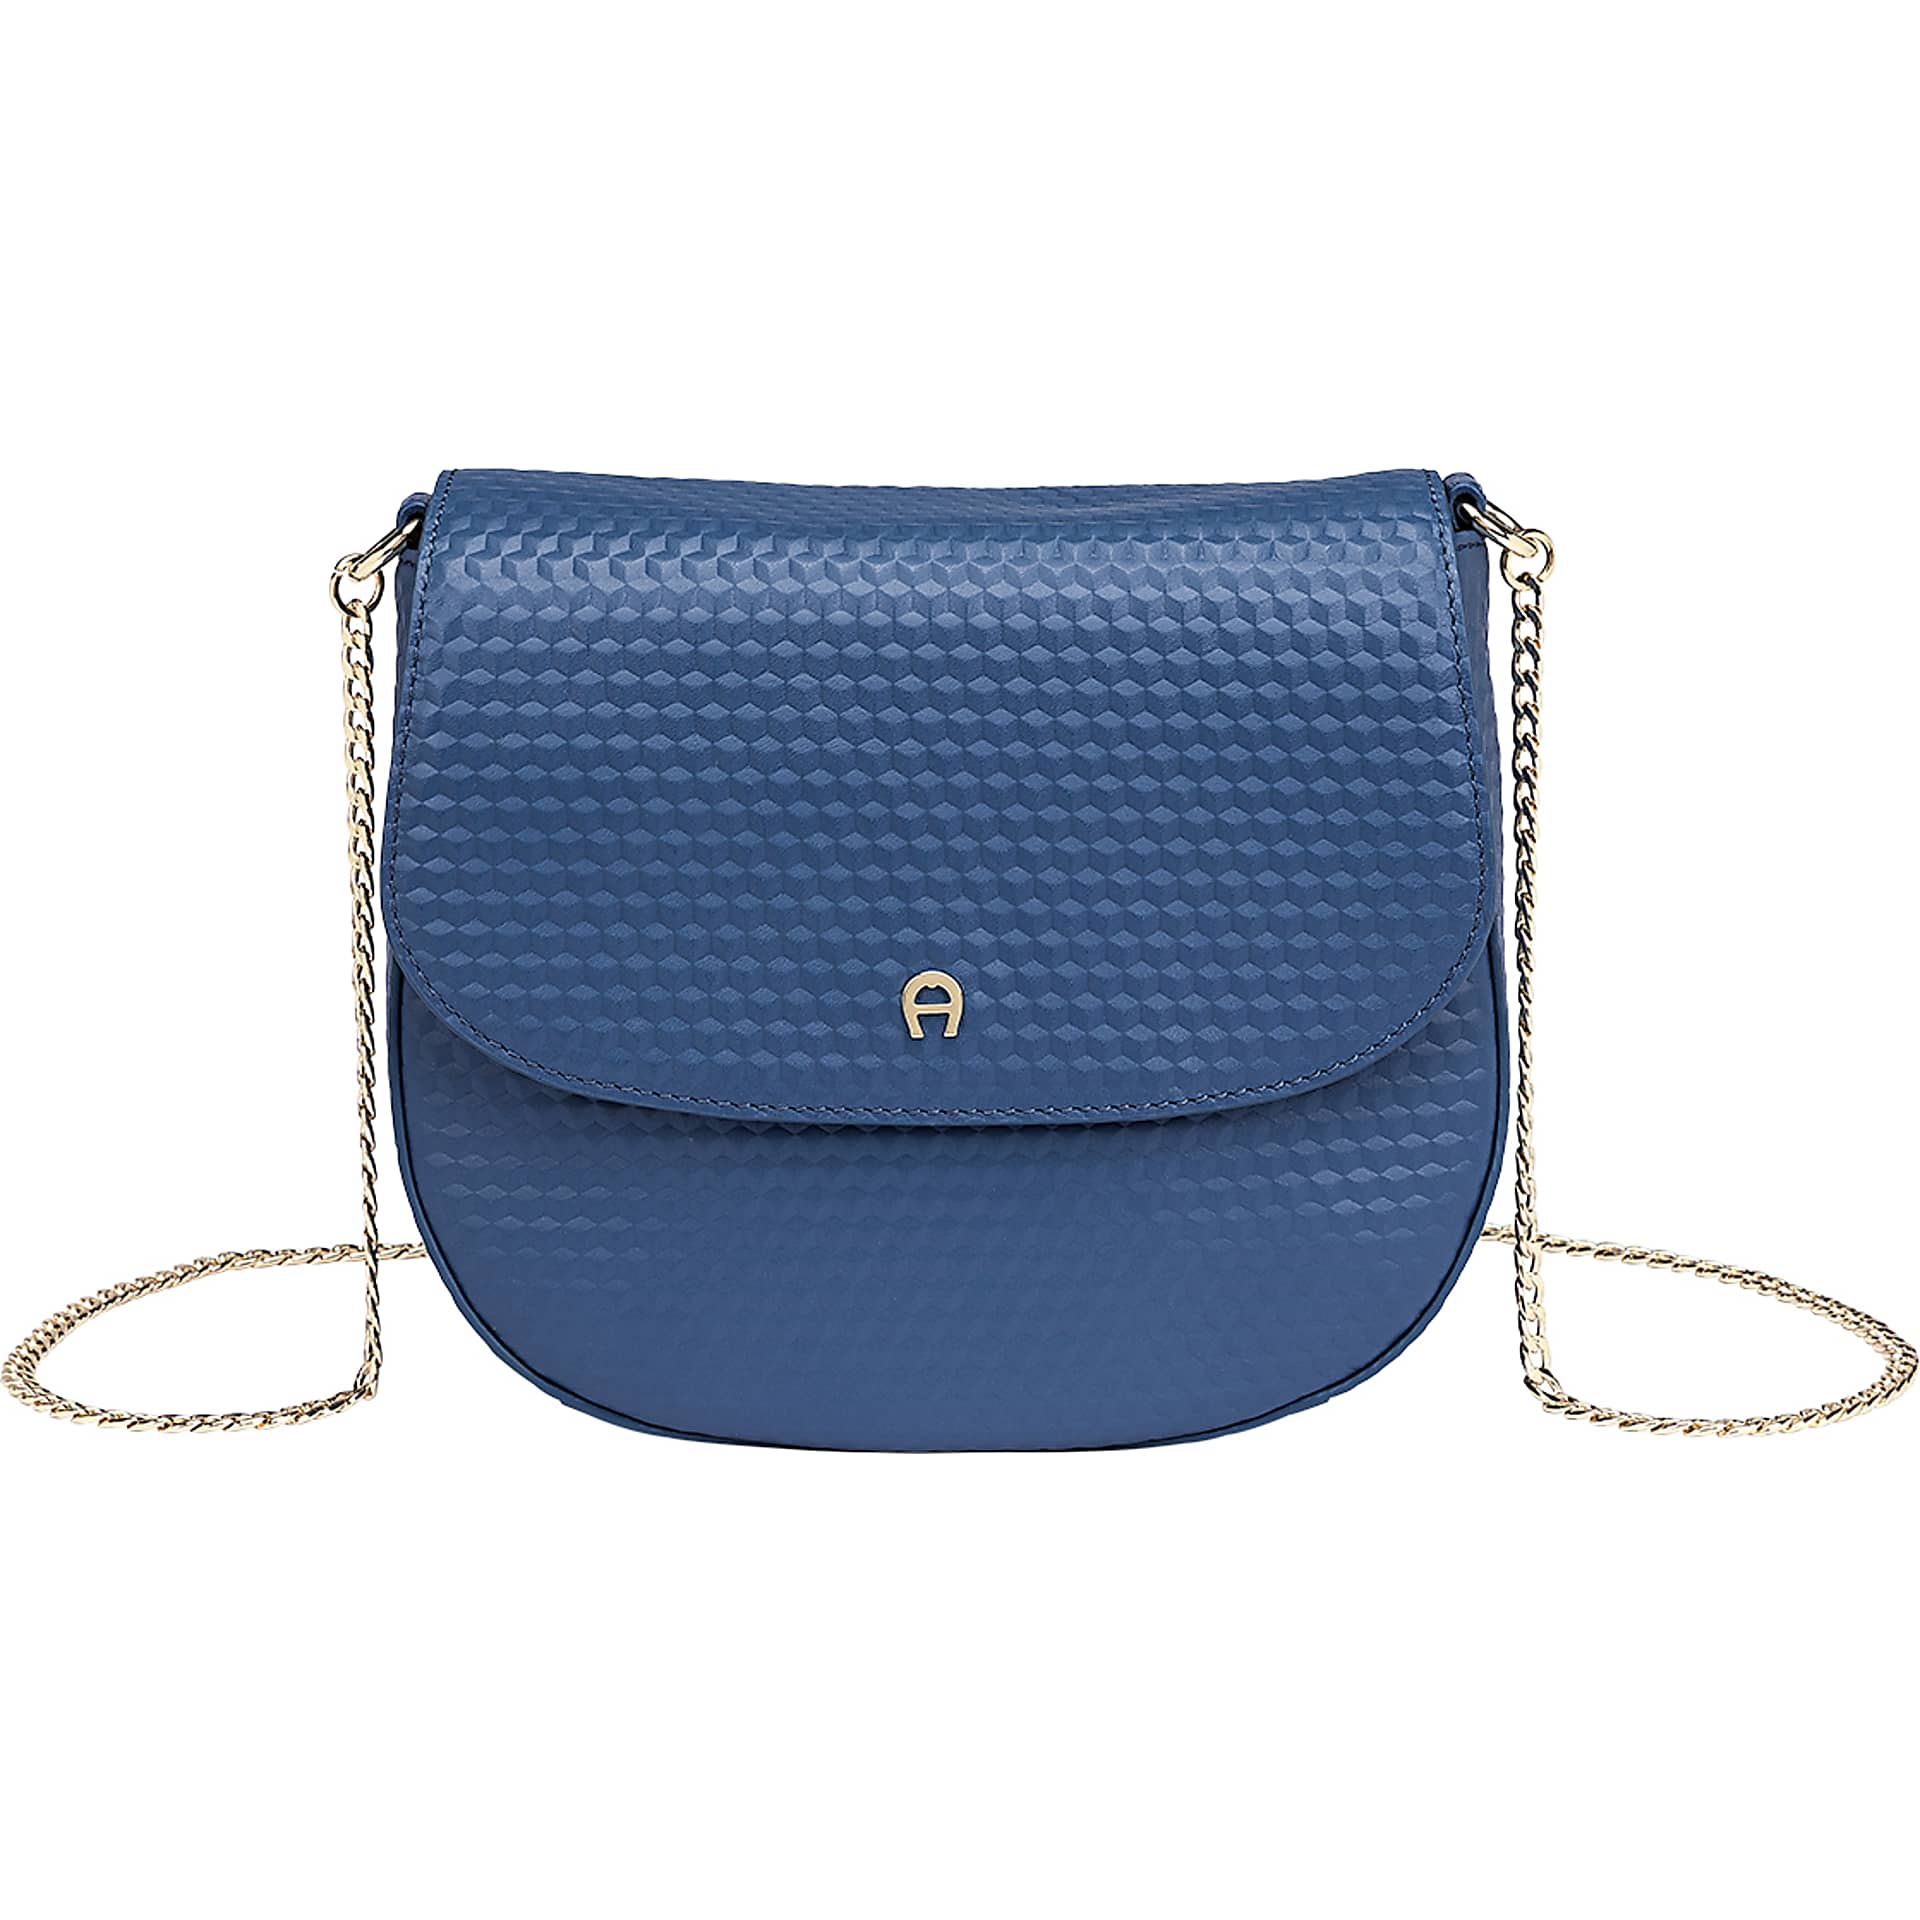 Ava Cube Shoulder Bag S persian blue - Bags - Women - AIGNER Club